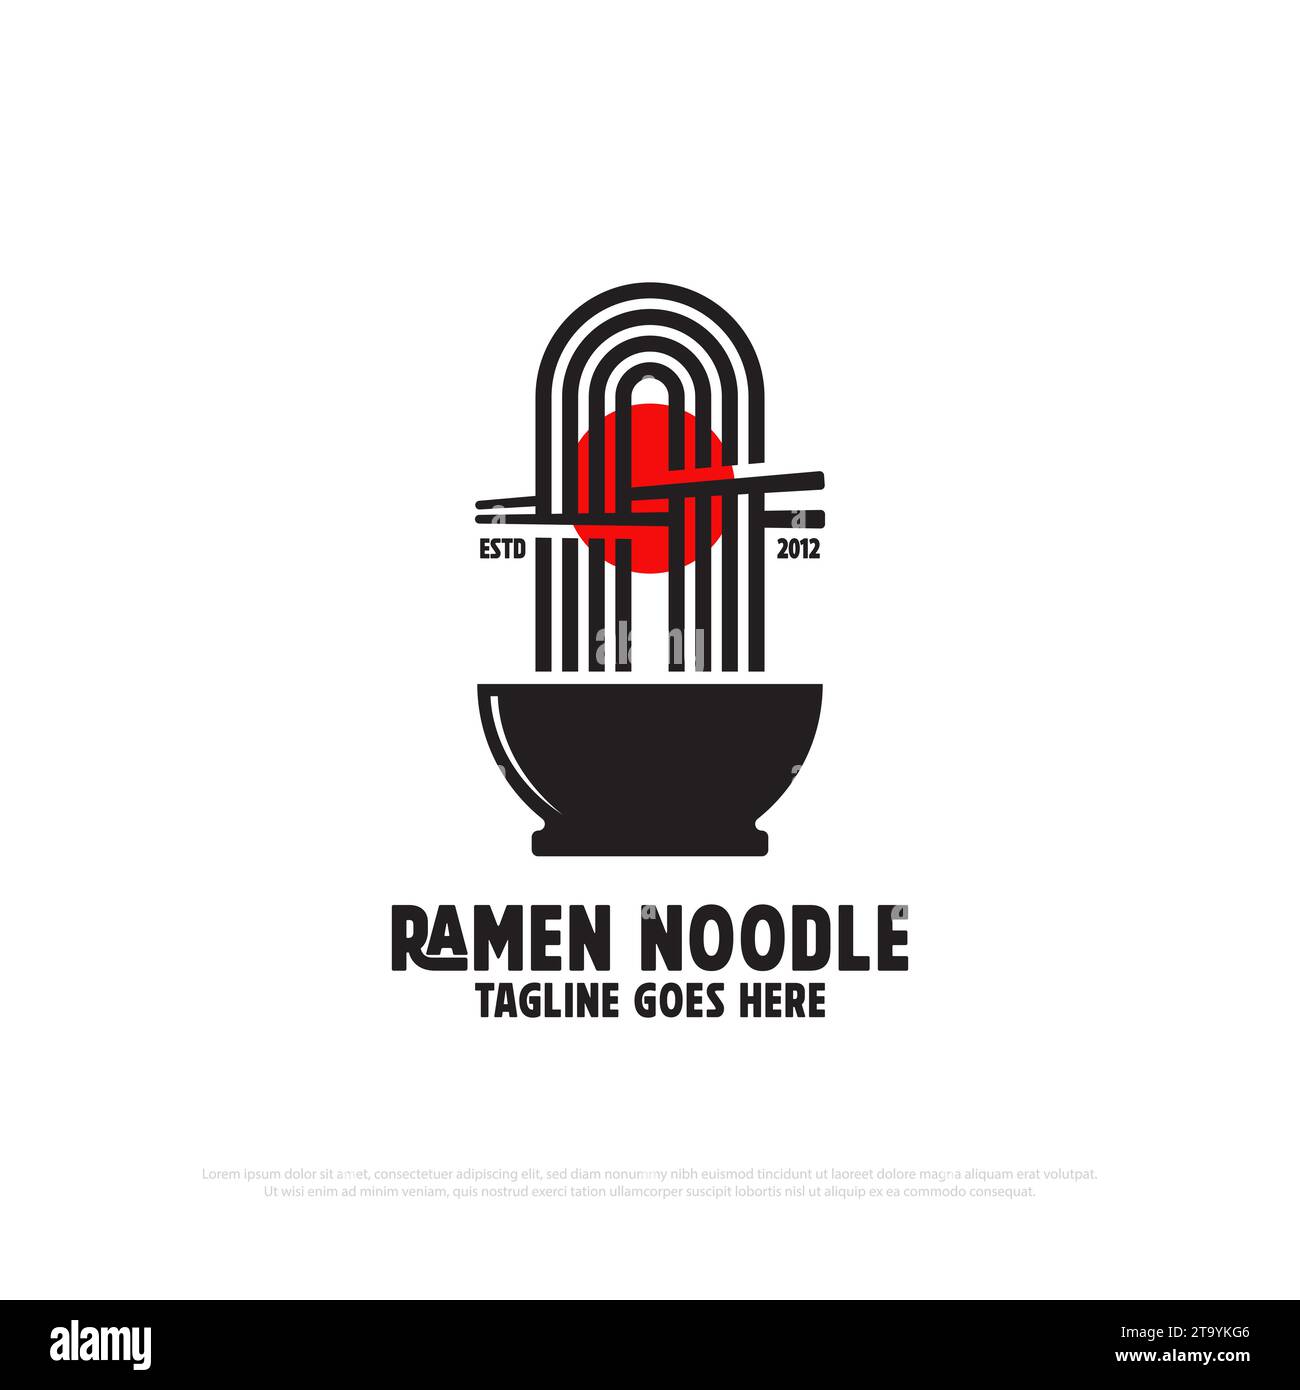 Vecteur de conception de logo de nouilles ramen, illustration vectorielle d'icône de logo de nourriture et de boissons, bon pour l'idée de logo de restaurant japonais Illustration de Vecteur